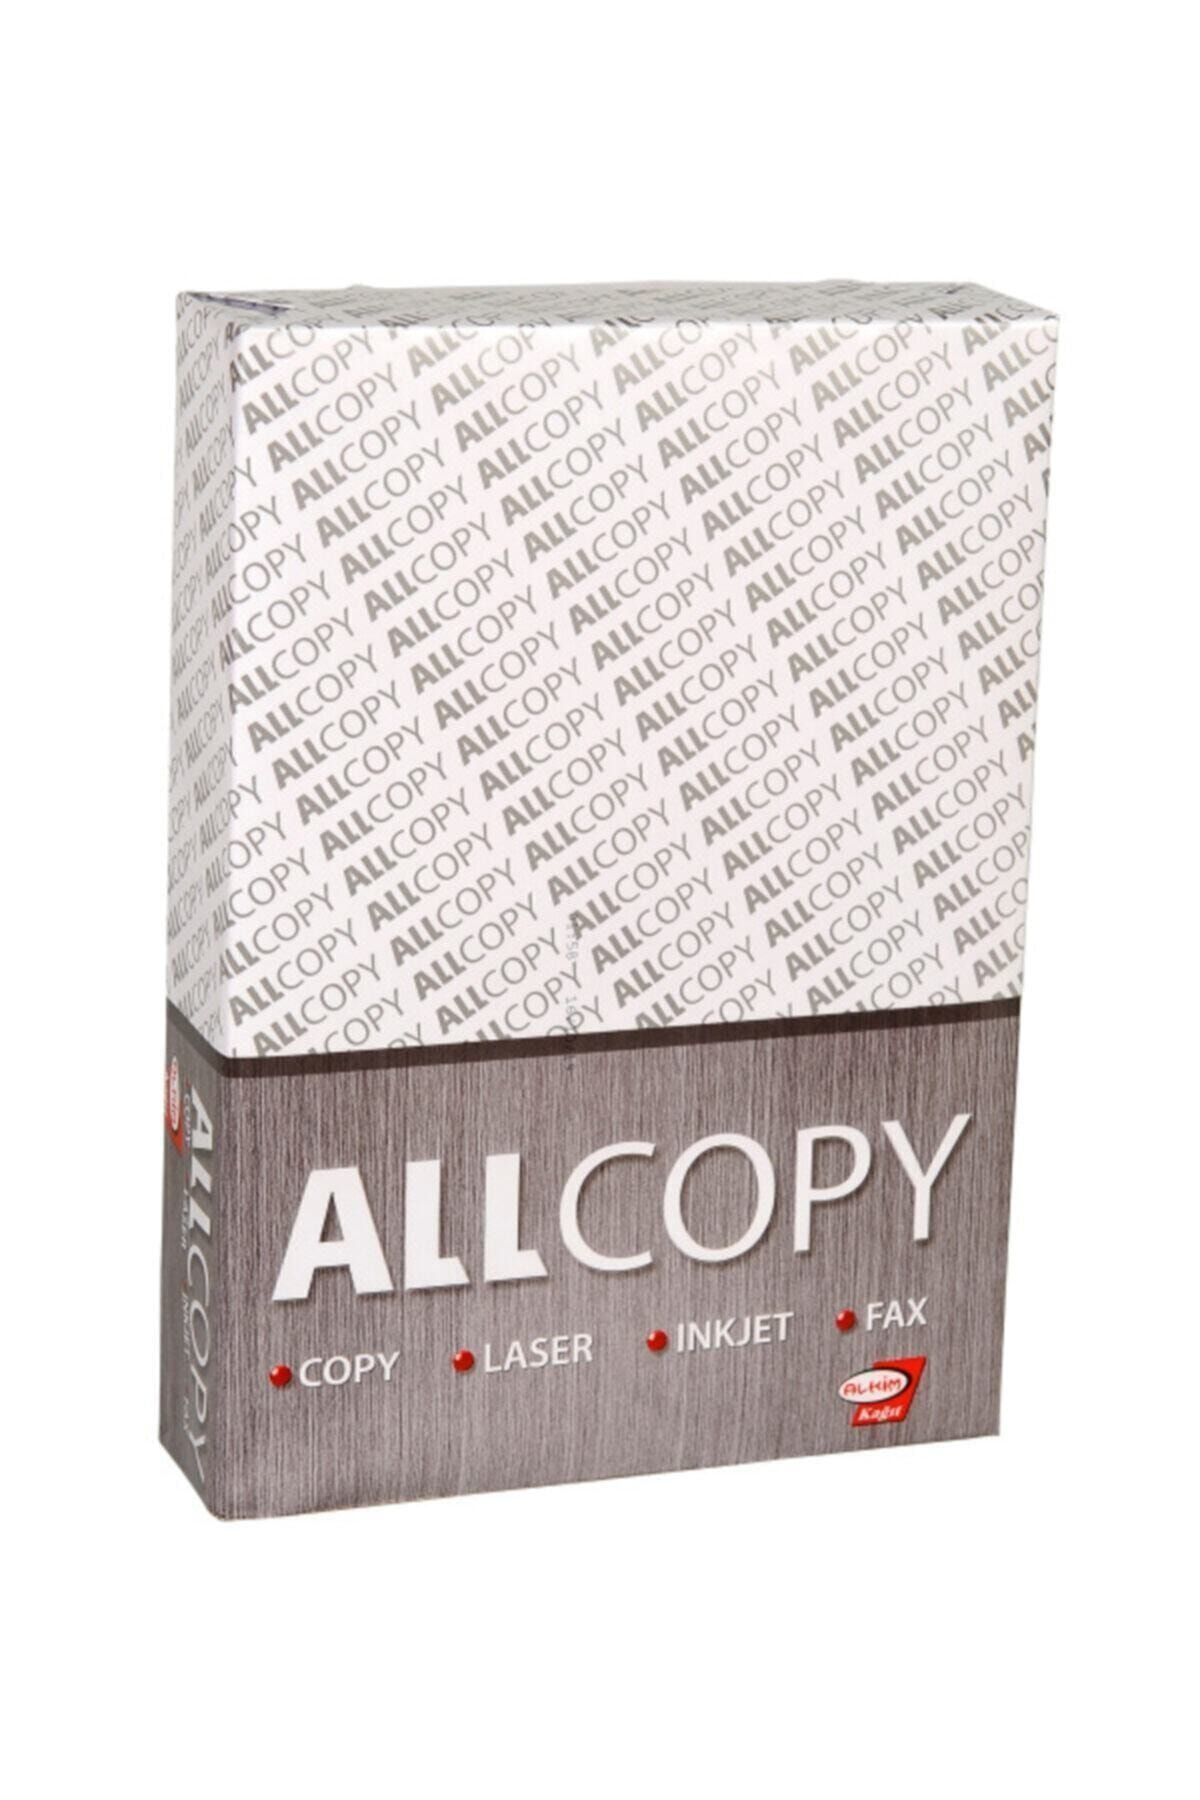 Alkim Kağıt Allcopy A/4 Fotokopi Kağıdı (5 PAKET)